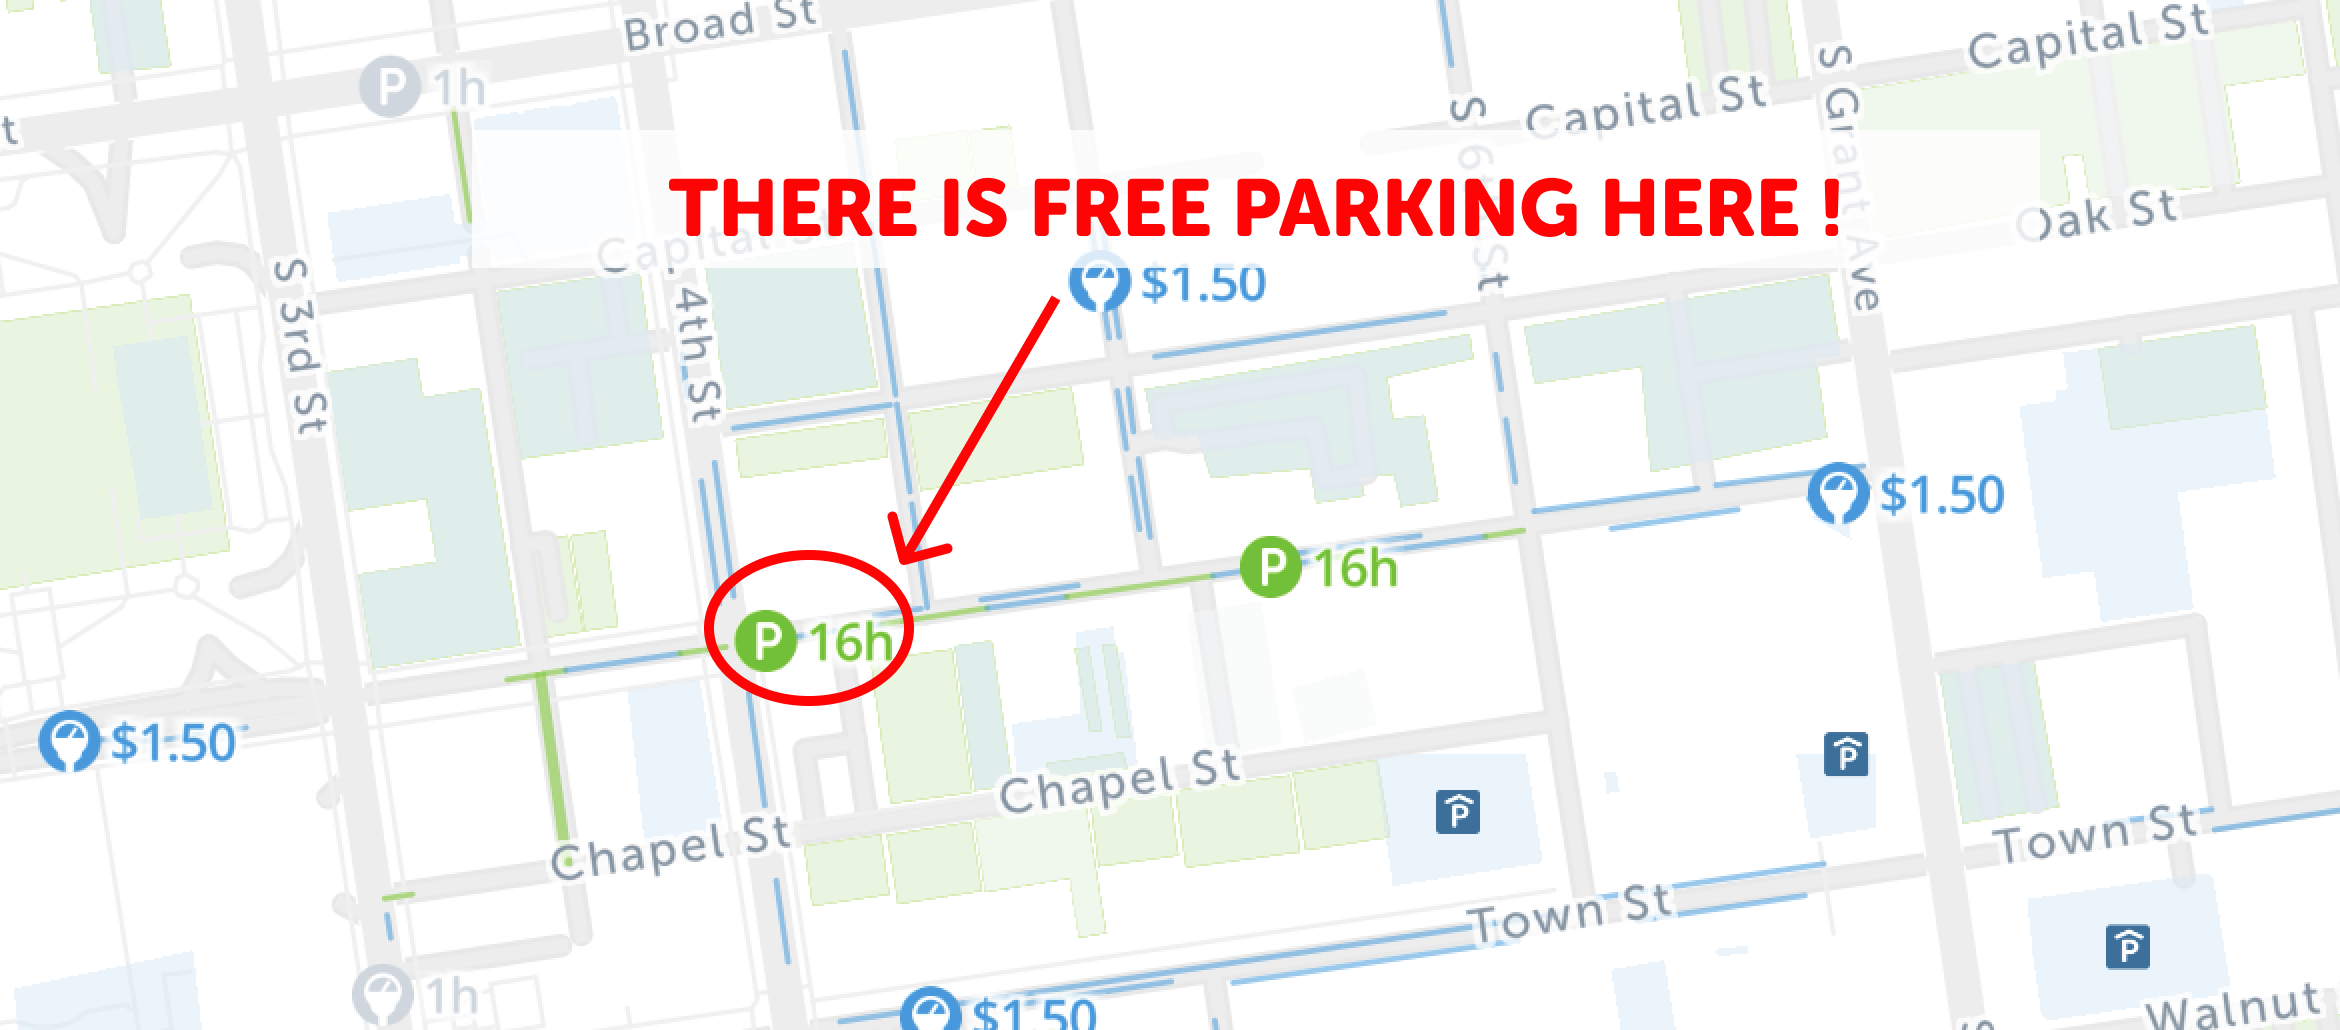 map of free parking in Columbus - SpotAngels